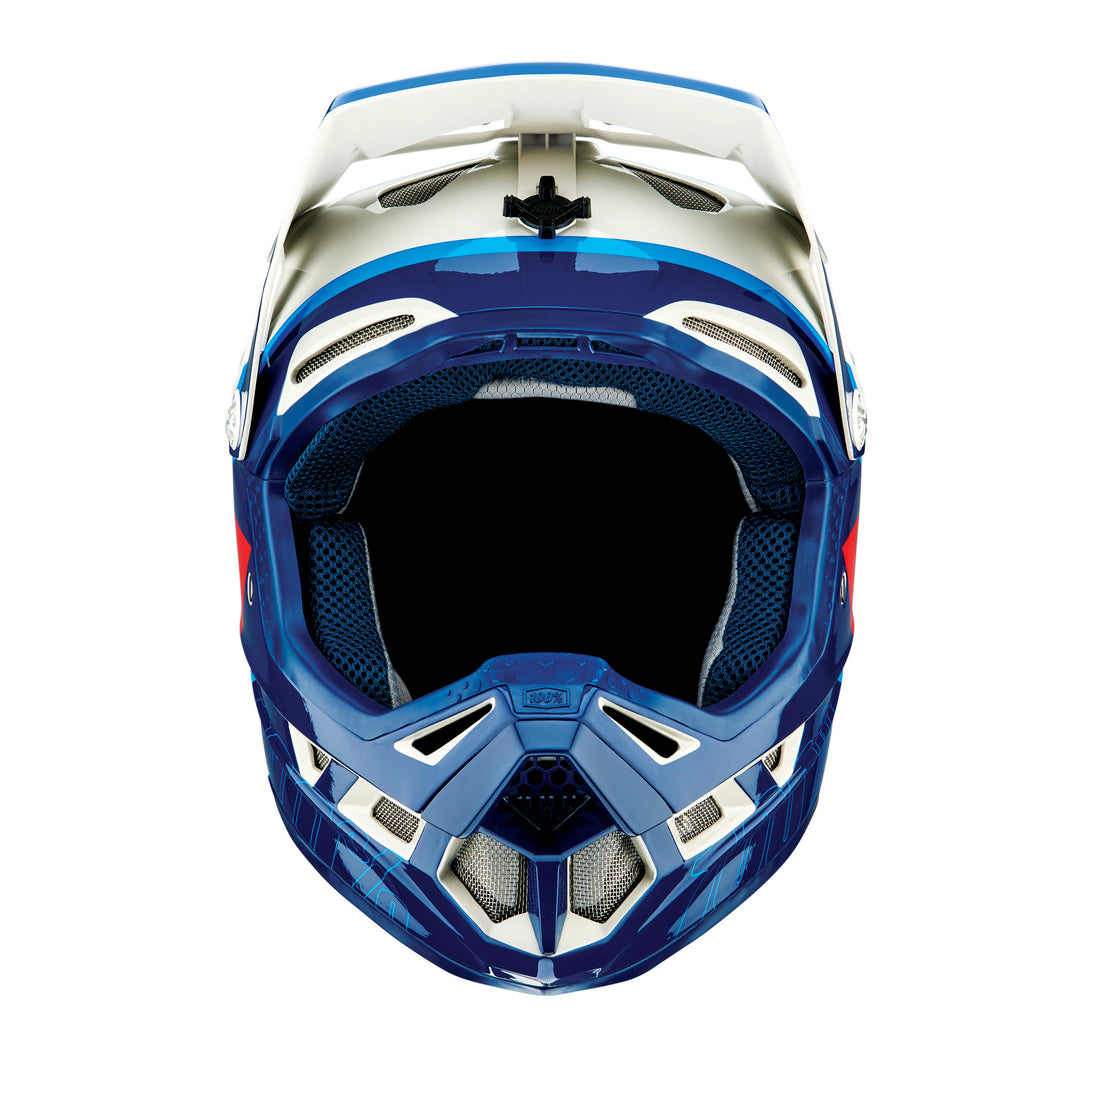 100 Percent Aircraft Composite Full-Face Helmet